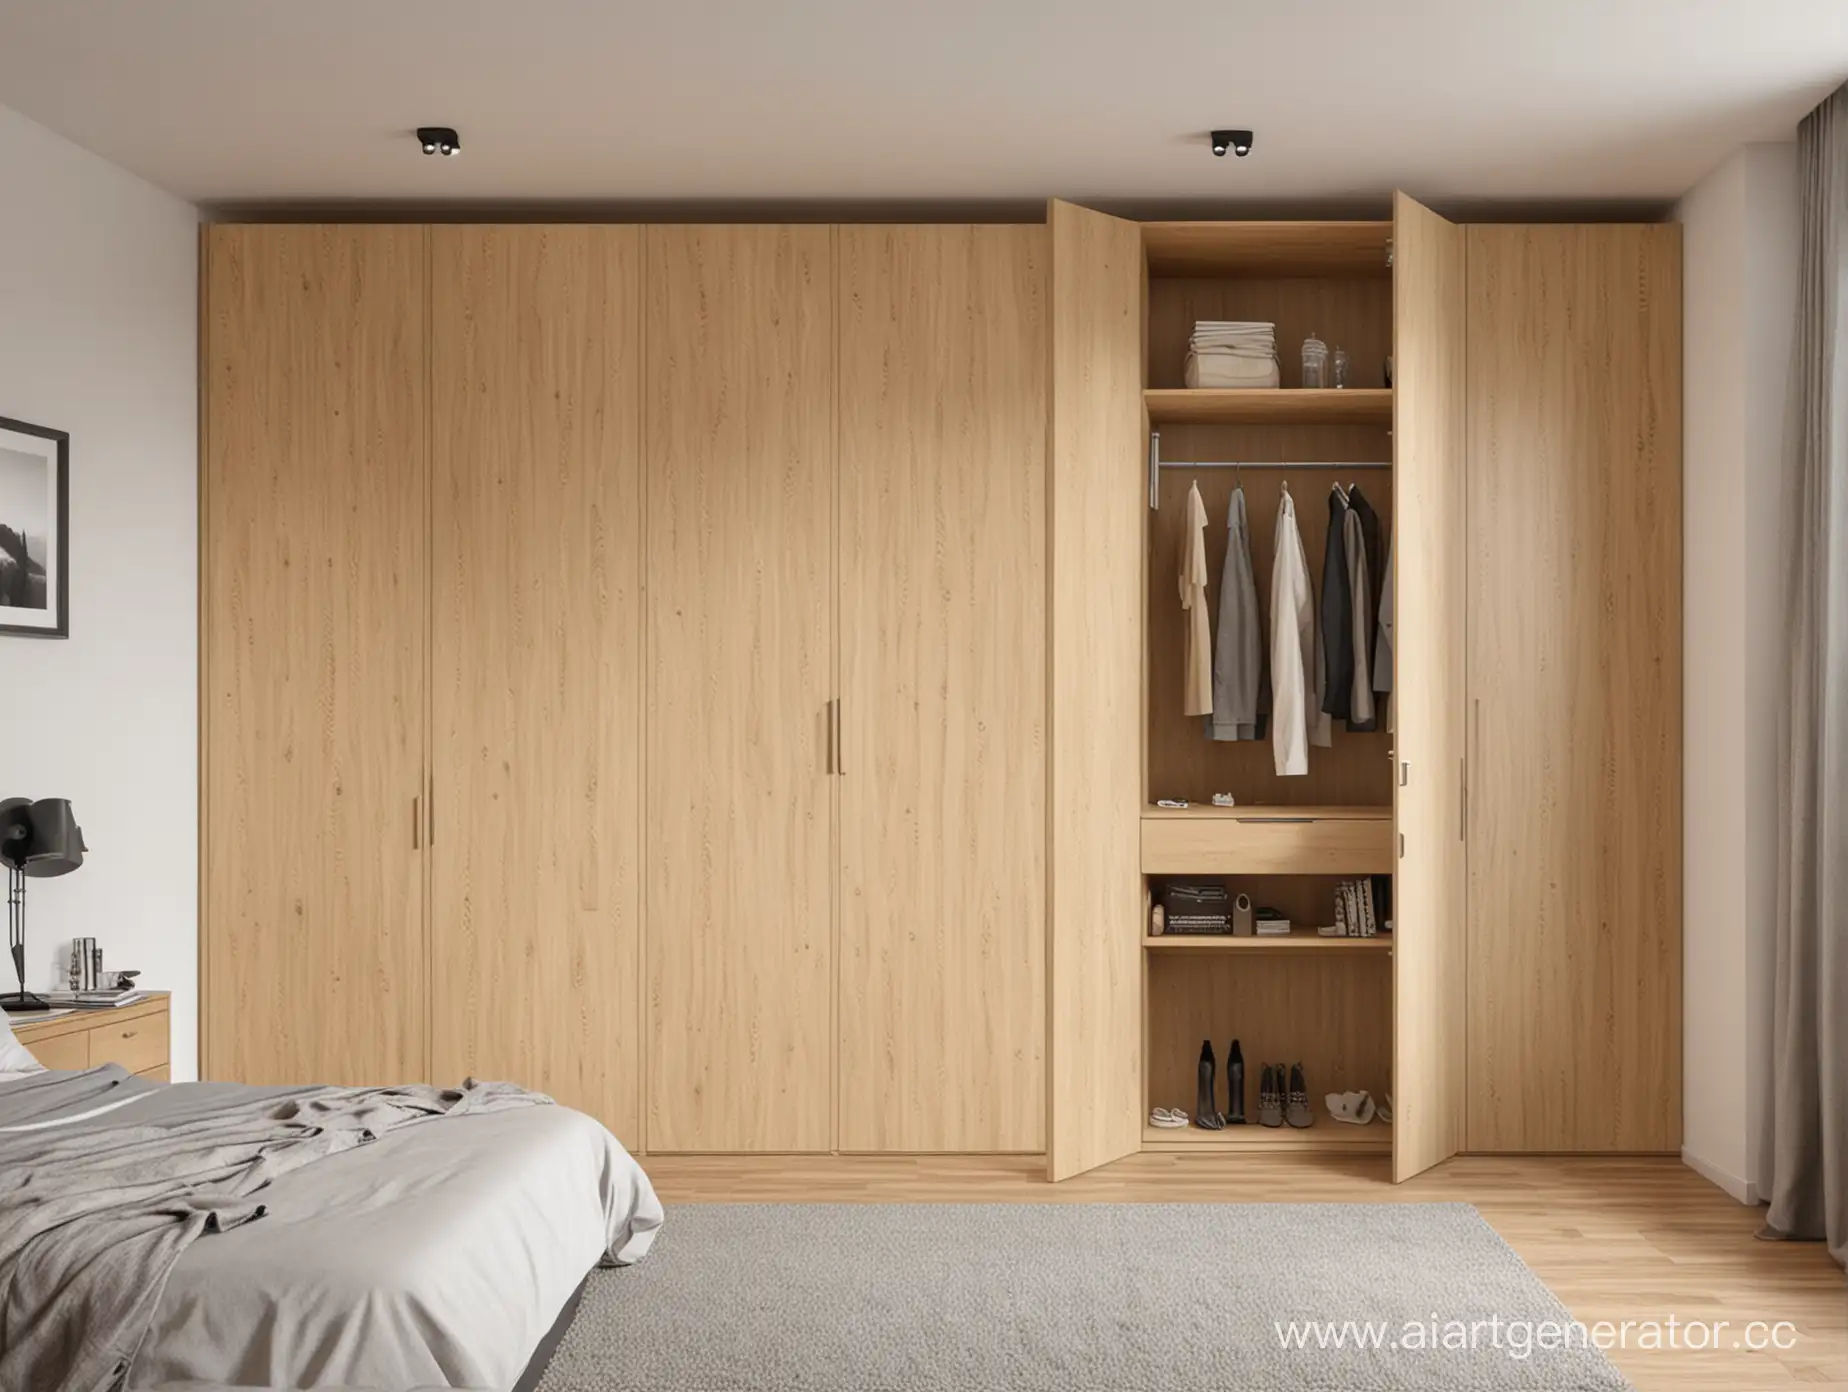 Modern-Interior-Design-Chipboard-Wardrobes-with-Stylish-Facades